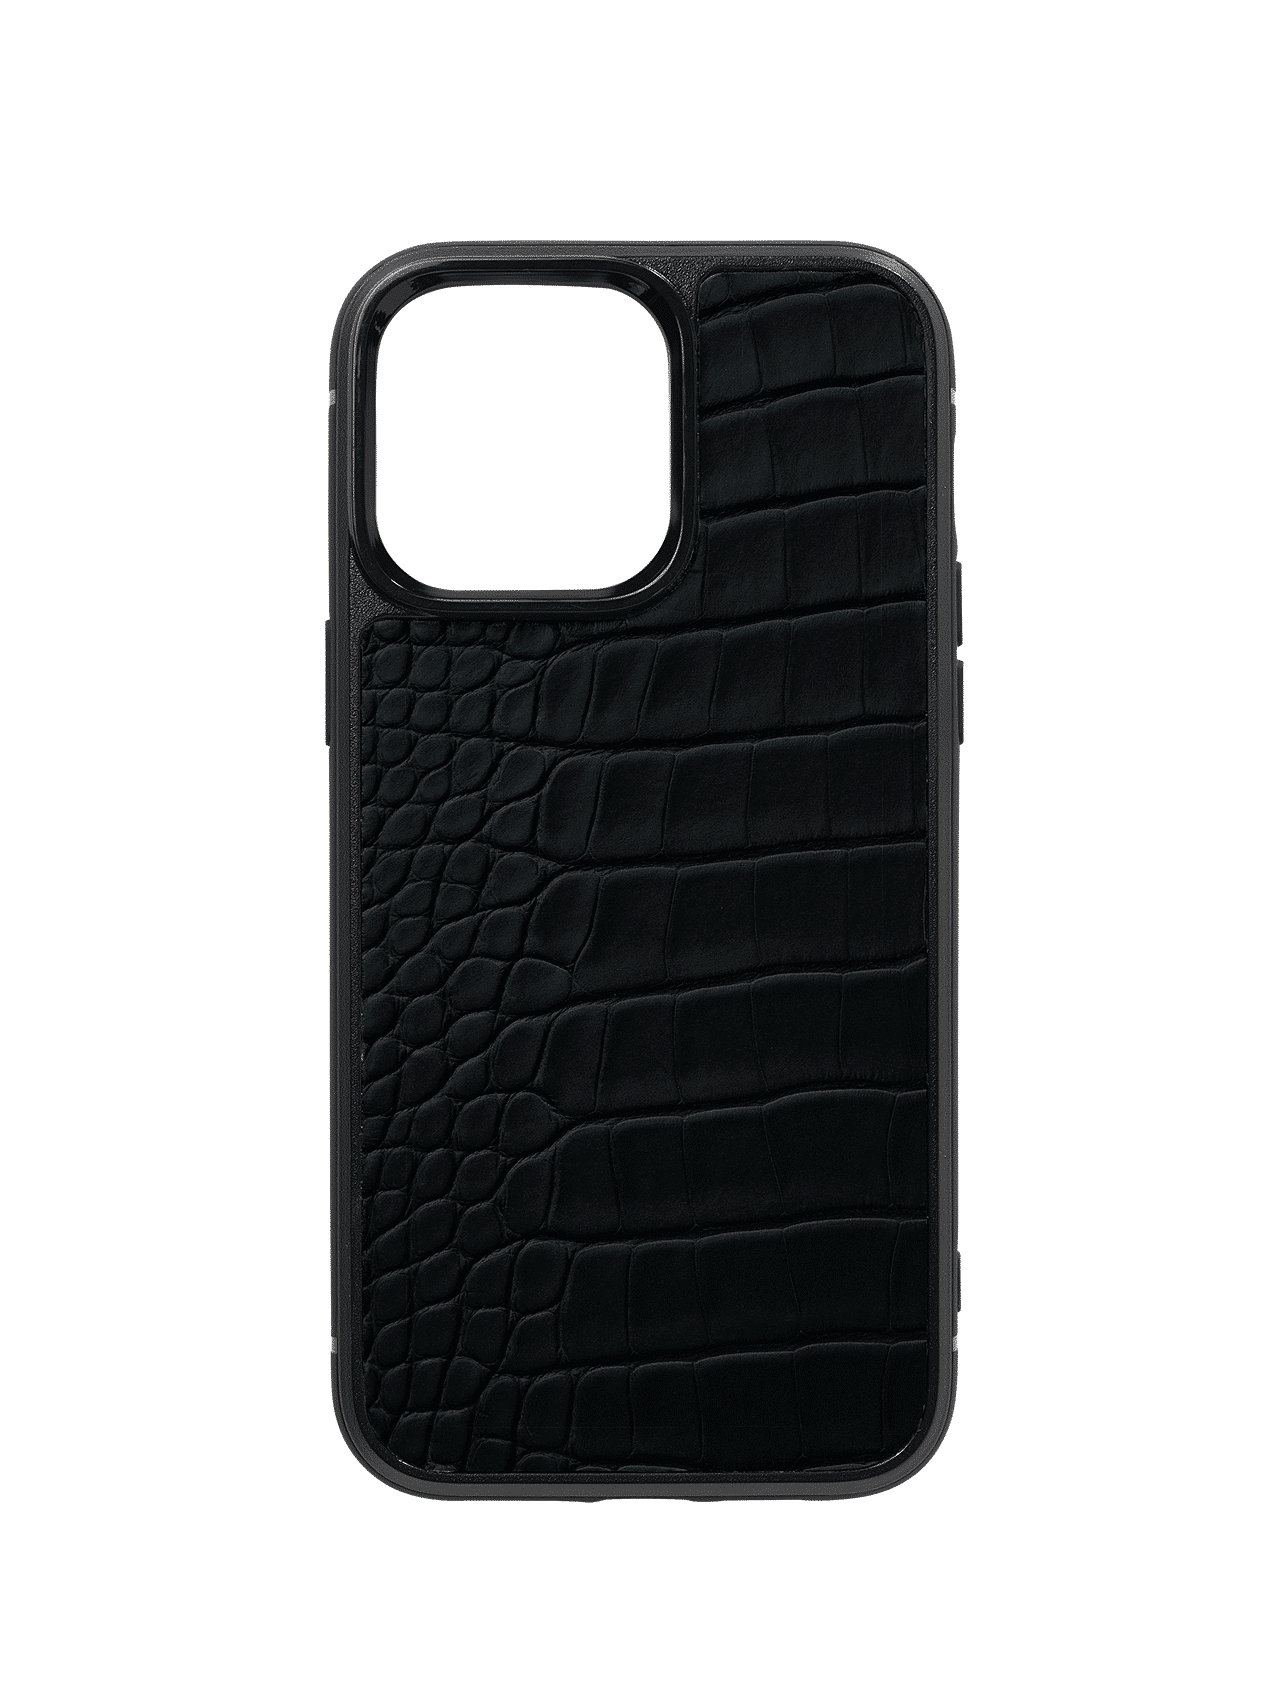 iphone case 14 pro max alligator black